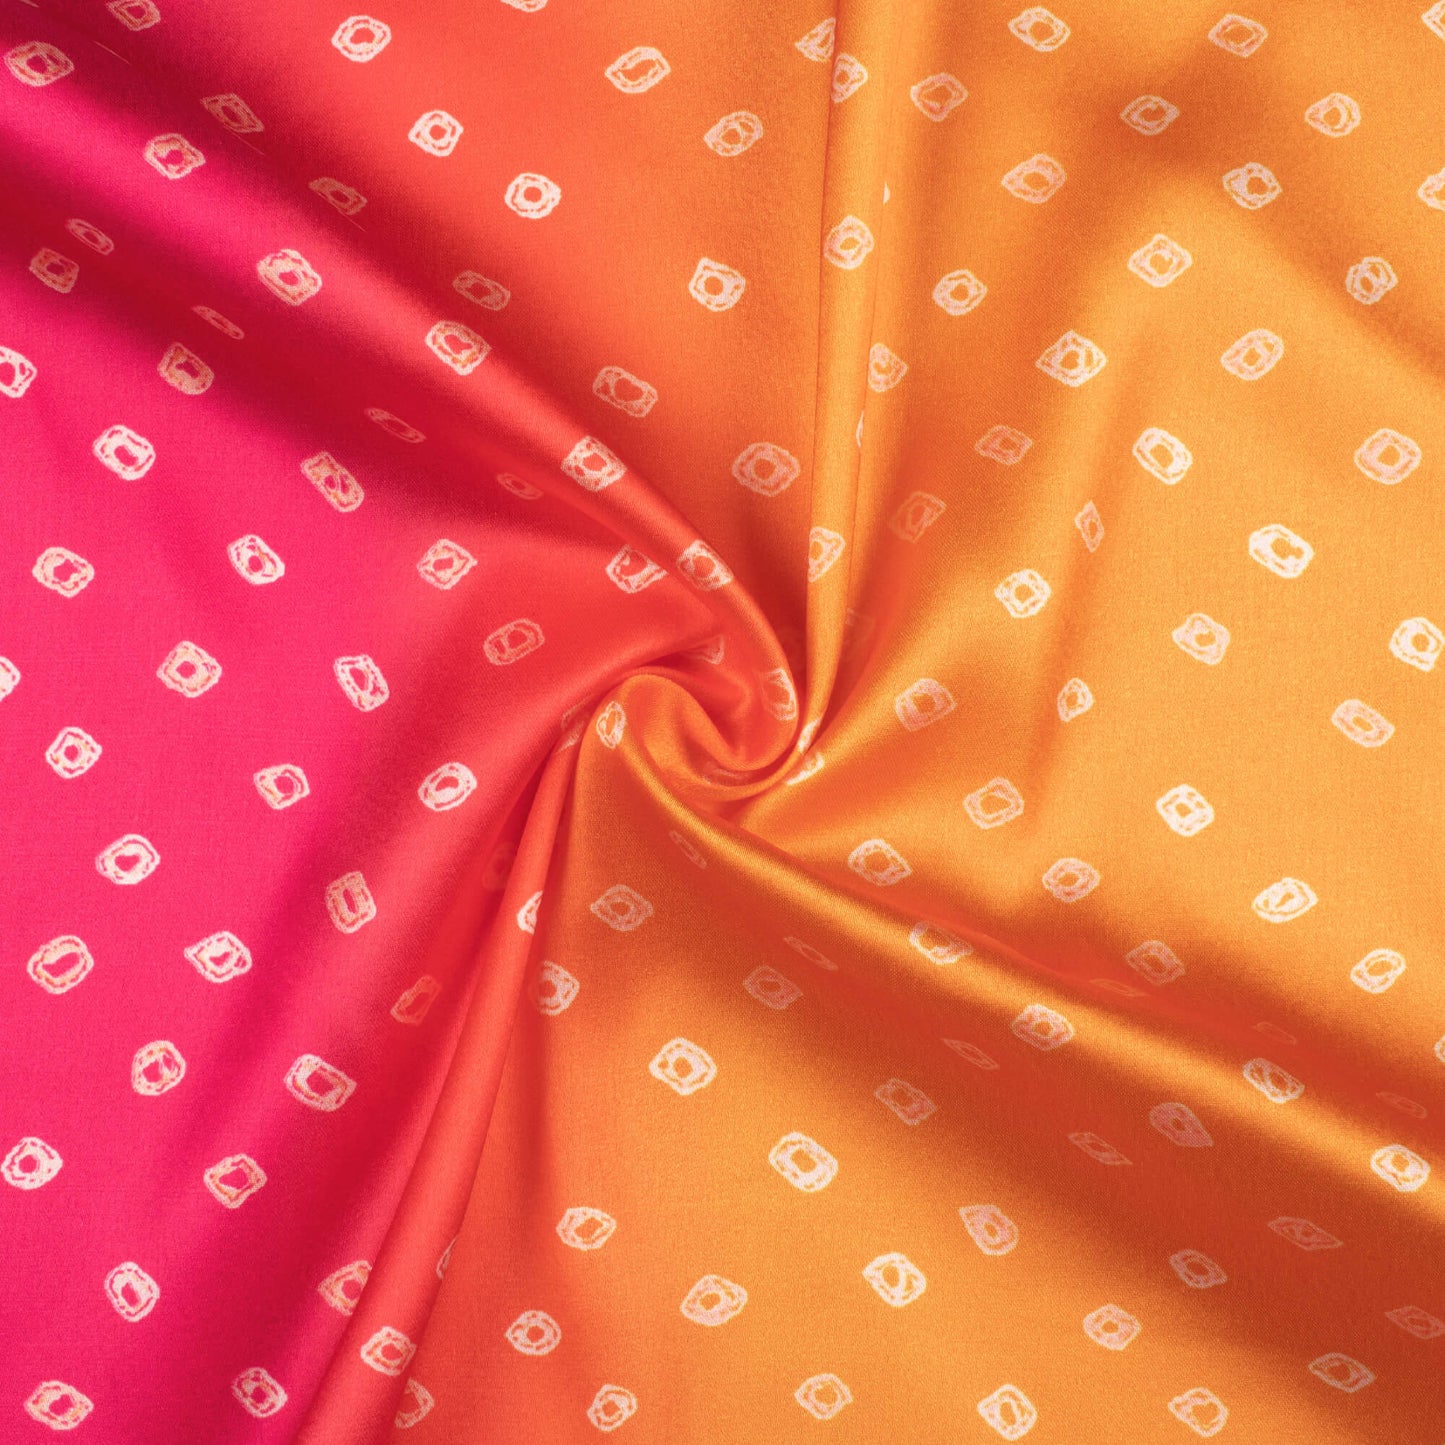 Apricot Orange And Magenta Pink Bandhani Pattern Digital Print Japan Satin Fabric